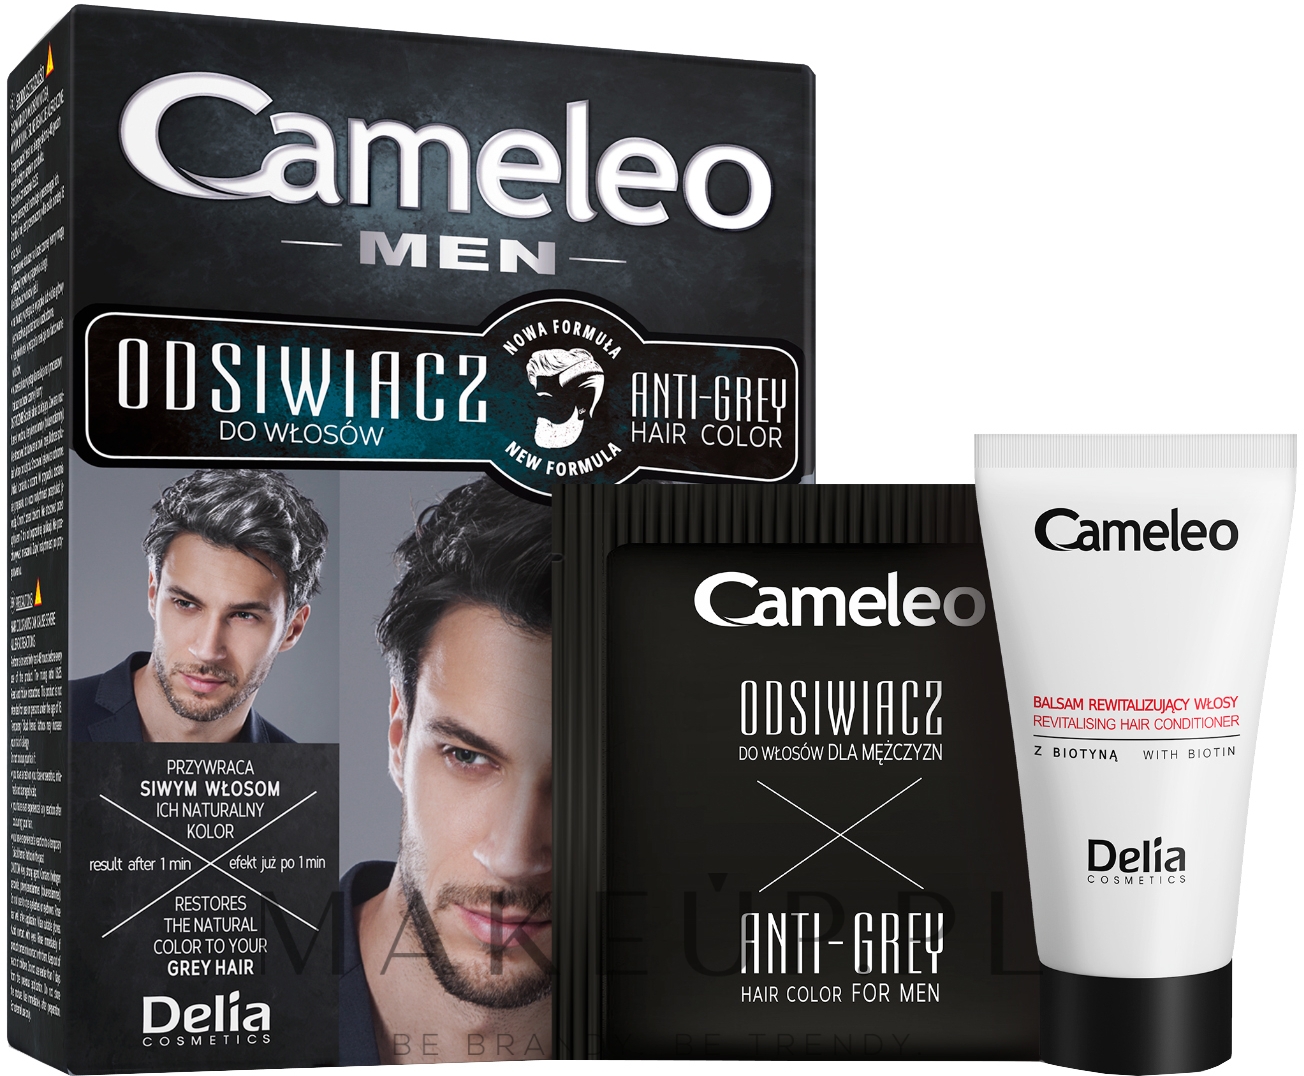 delia cameleo men szampon dla mężczyzn do włosów wizaz